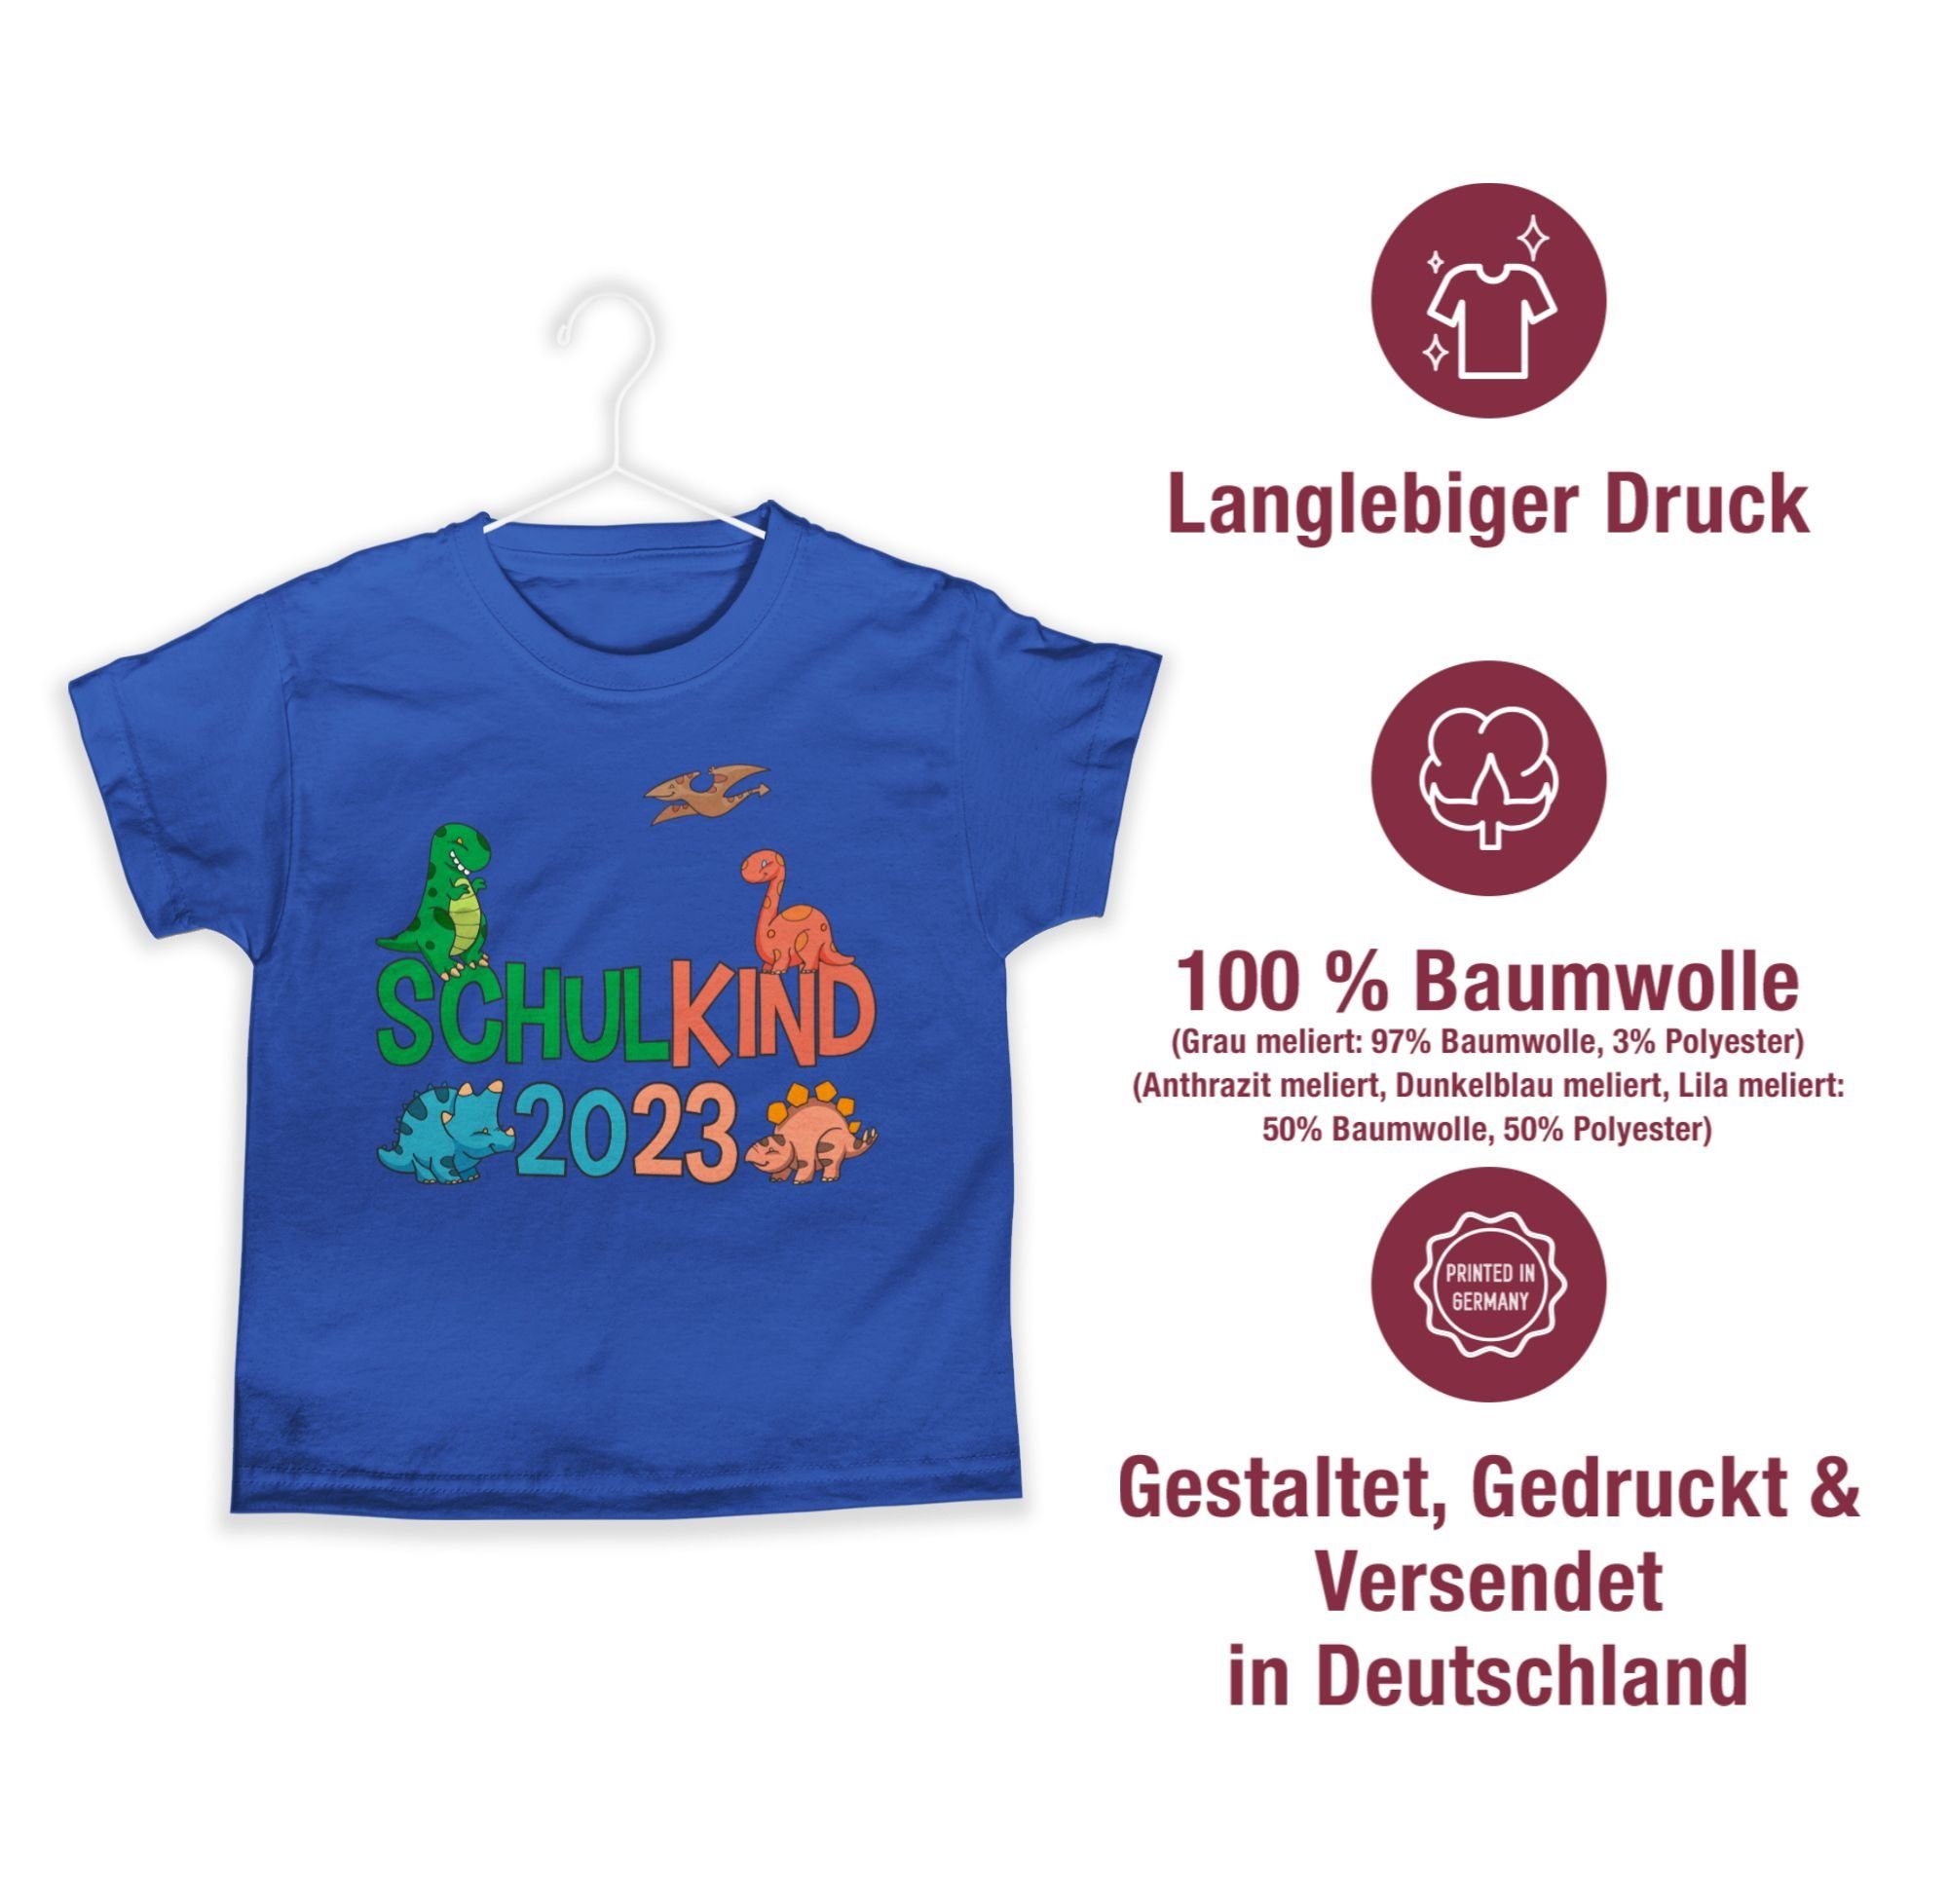 T-Shirt 2023 Einschulung Dinos Shirtracer Schulanfang Geschenke 03 Junge Schulkind Royalblau